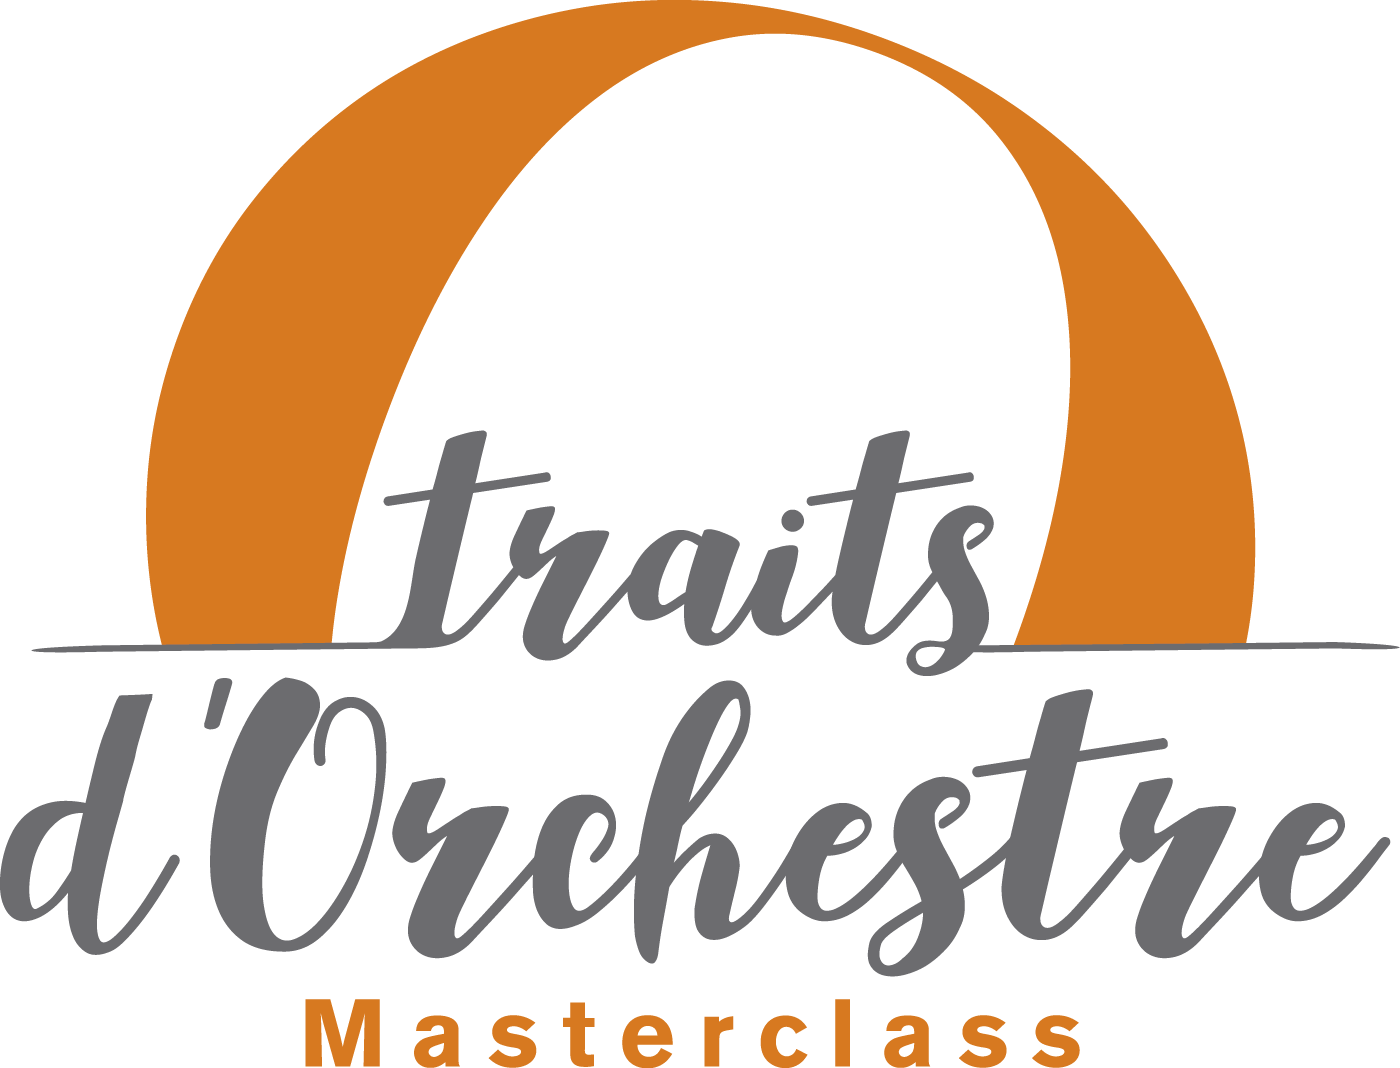 Masterclass de traits d’orchestre à Gramat avec Estelle Richard